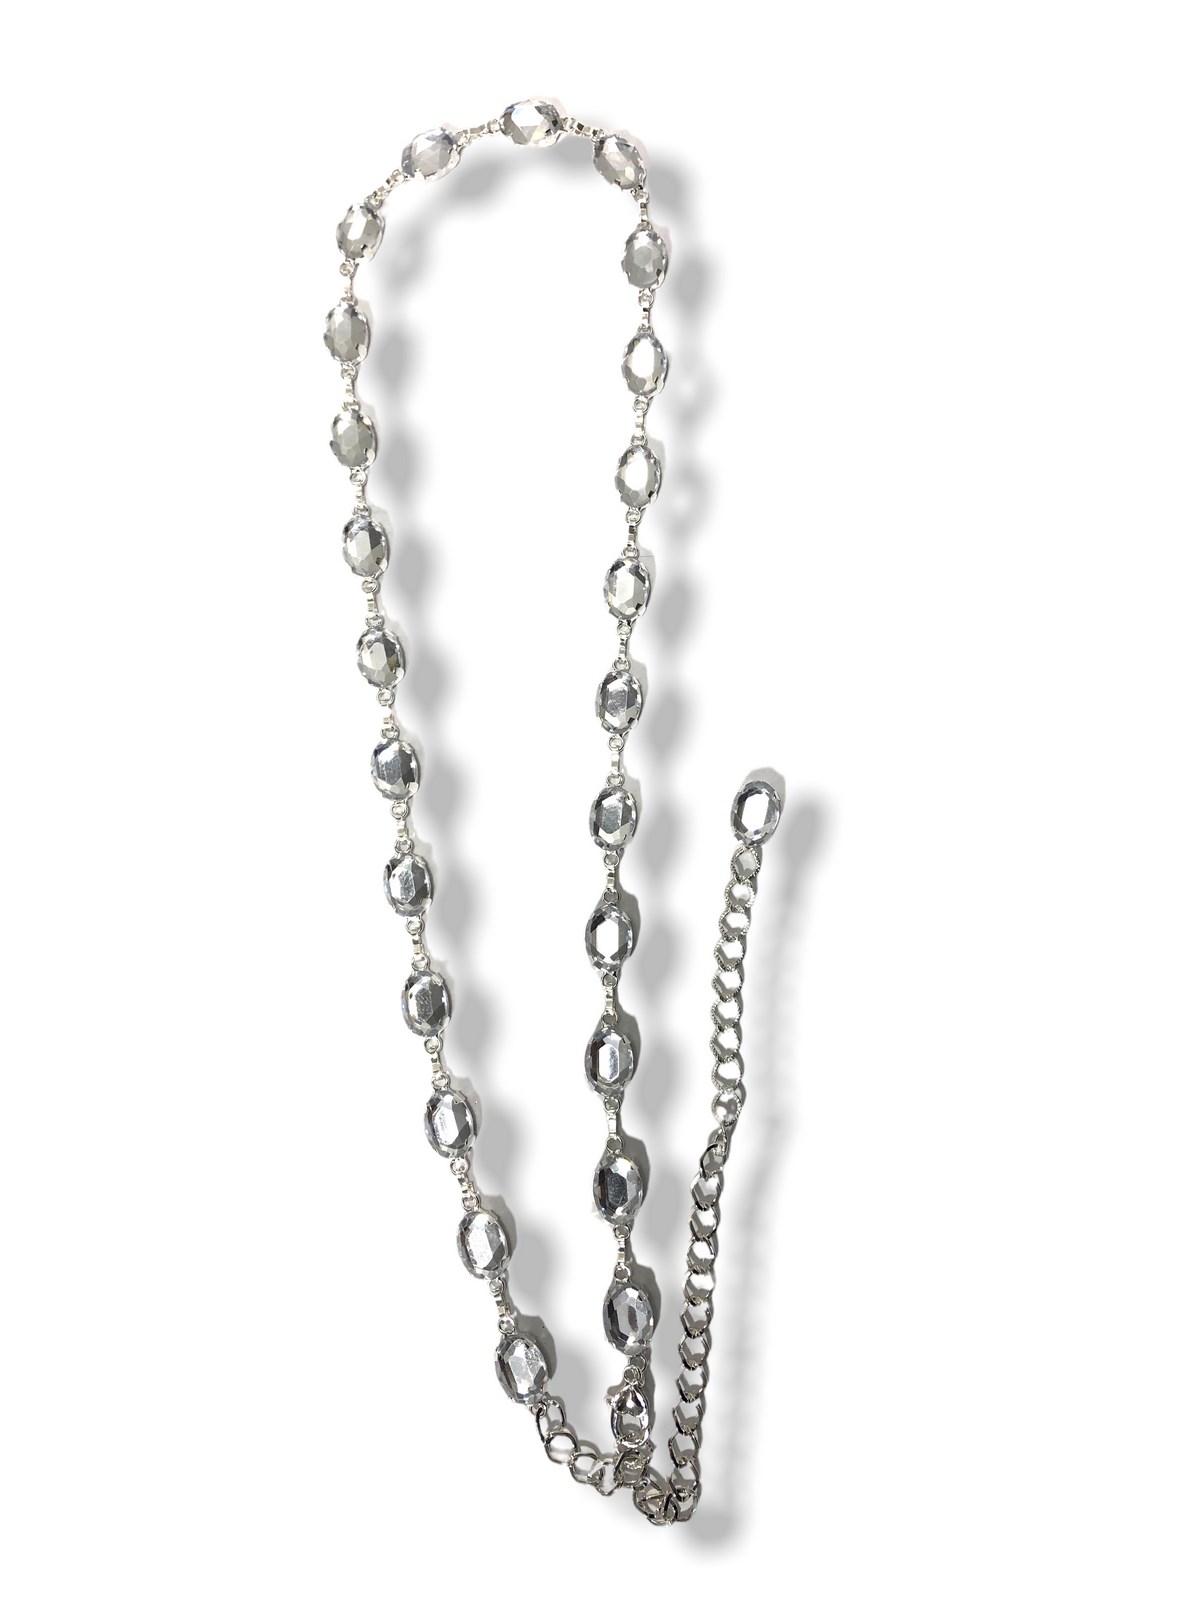 Gümüş Renk Kadın Kemer Oval Taş Abiye Elbise Kemeri 75 Cm Taş Kısmı 20Cm  Zincir 105 Cm |elizabell.com.tr